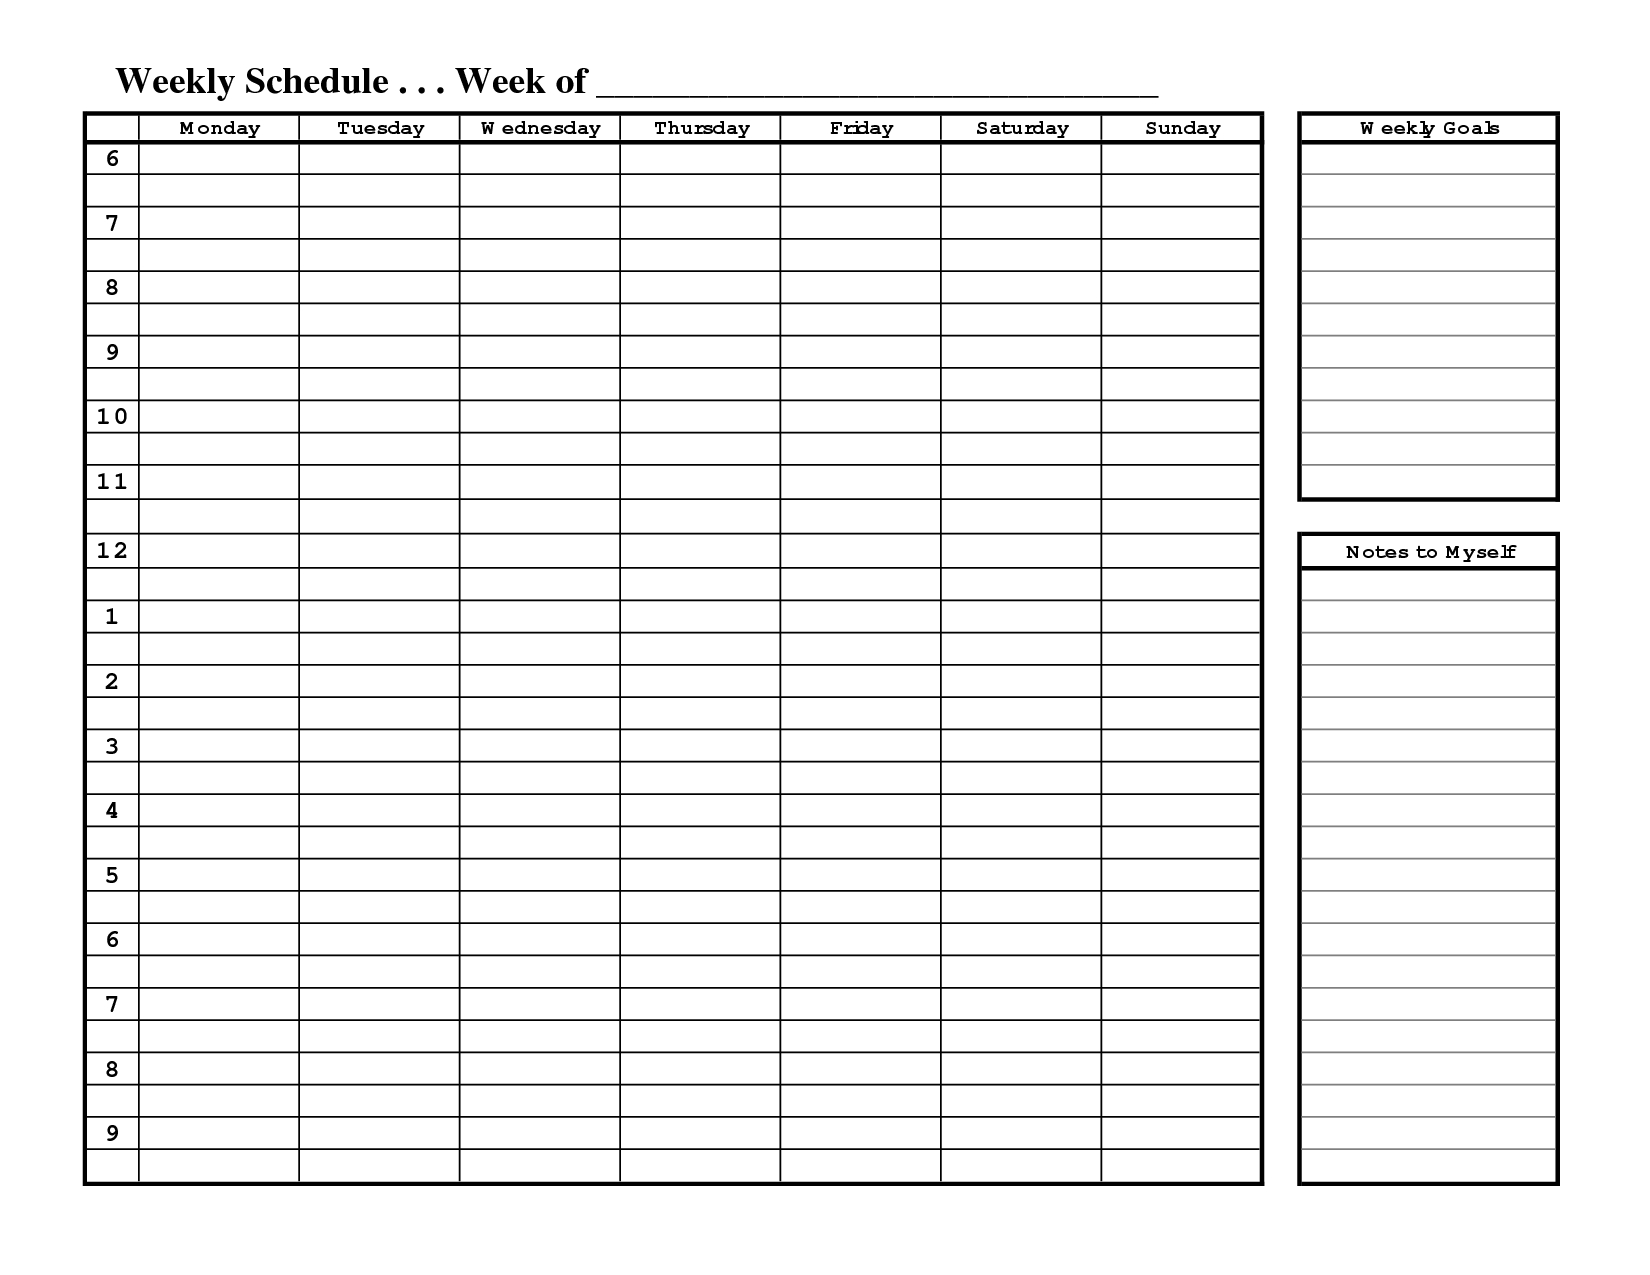 Free Printable Weekly Schedule Template | Weekly Schedule